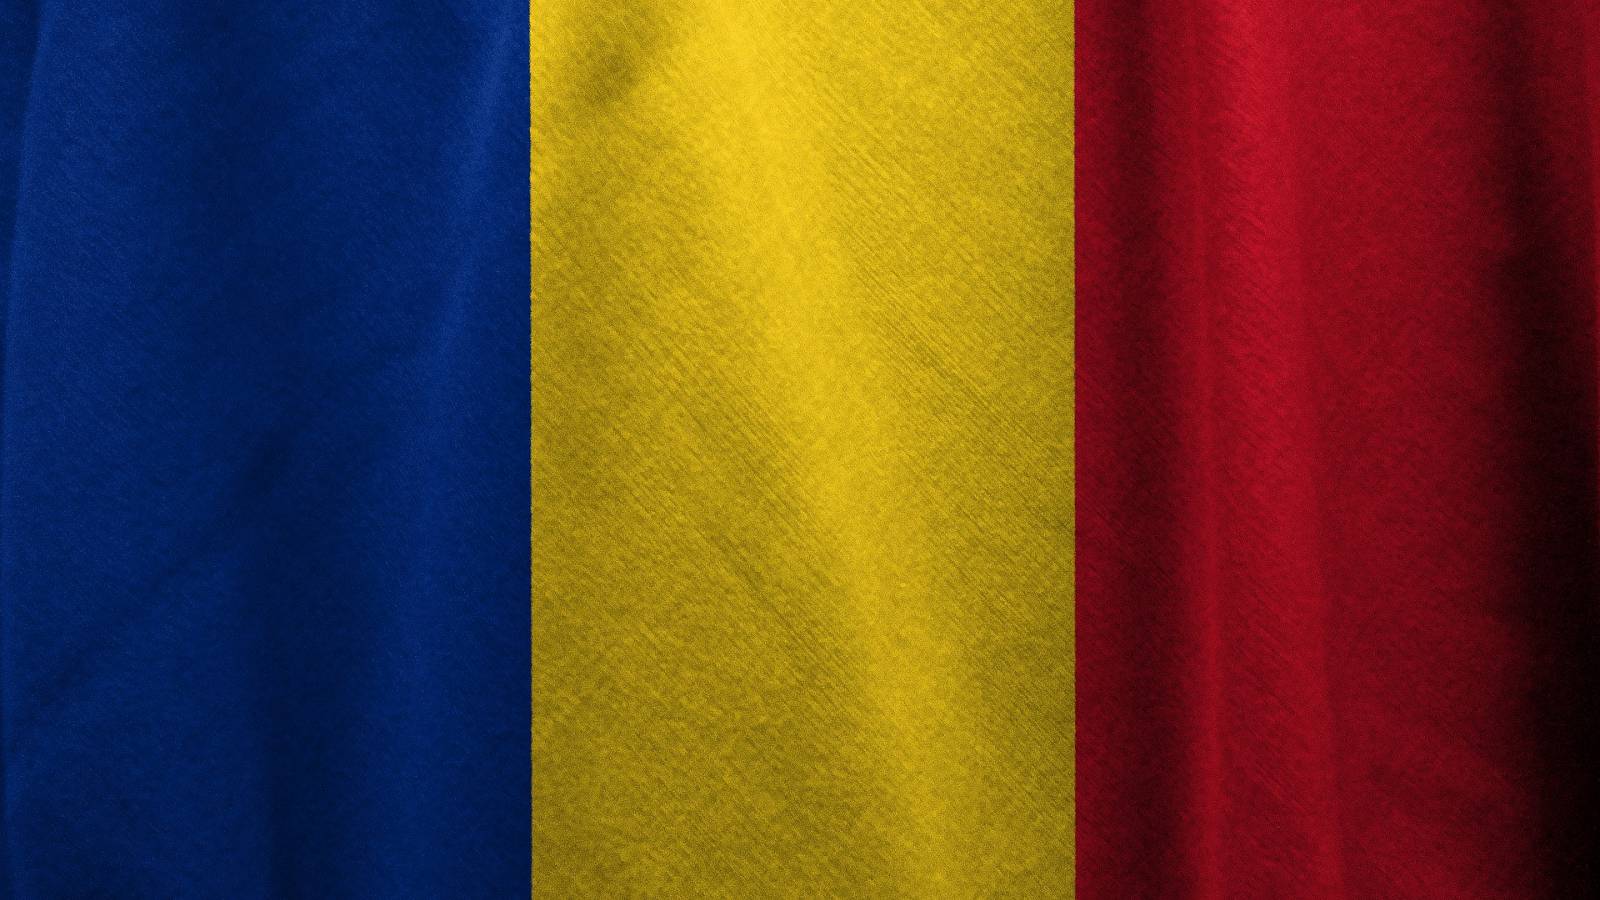 Tasas de incidencia de COVID-19 en los condados de Rumania 17 de enero de 2022